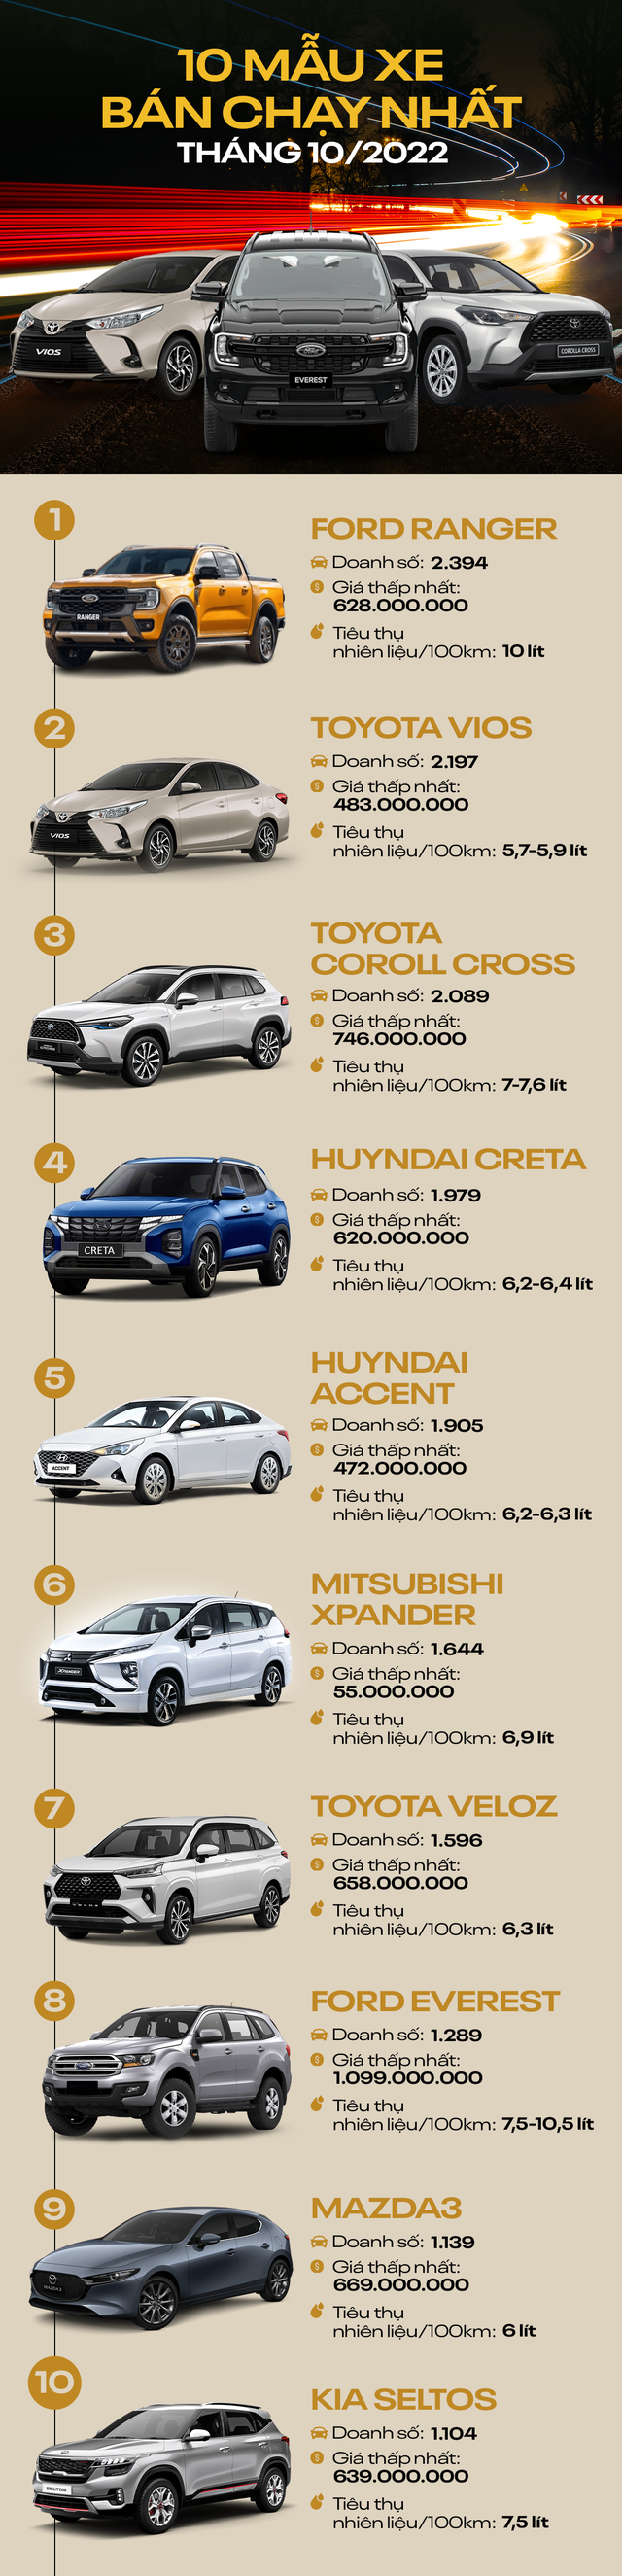 [Infographic] 10 mẫu ô tô bán chạy nhất tháng 10/2022: Ford Ranger dẫn đầu, hai dòng xe của Toyota bám đuổi sát nút - Ảnh 1.